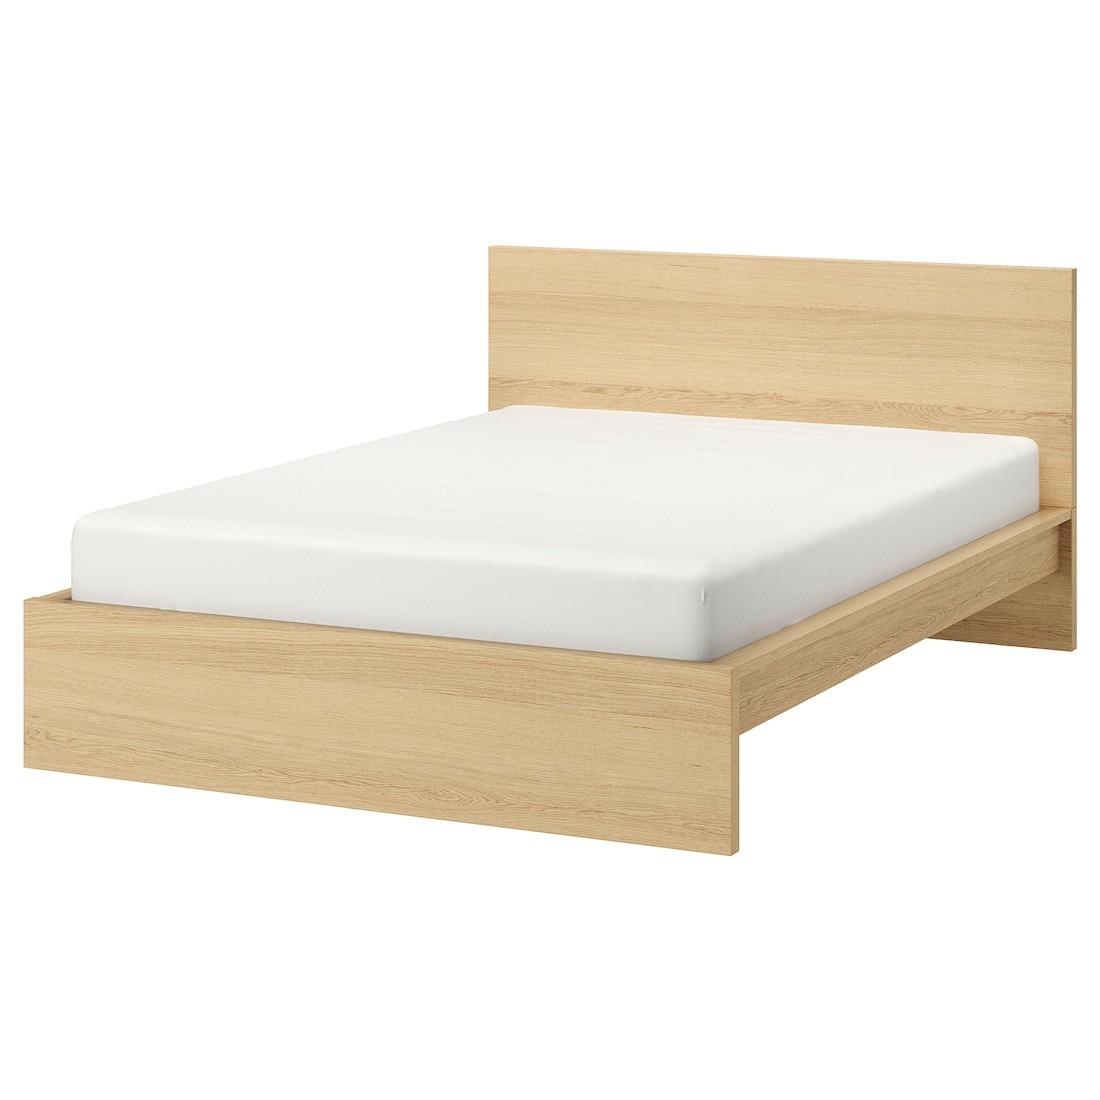 MALM МАЛЬМ Кровать двуспальная, высокий, дубовый шпон беленый / Lindbåden, 180x200 см